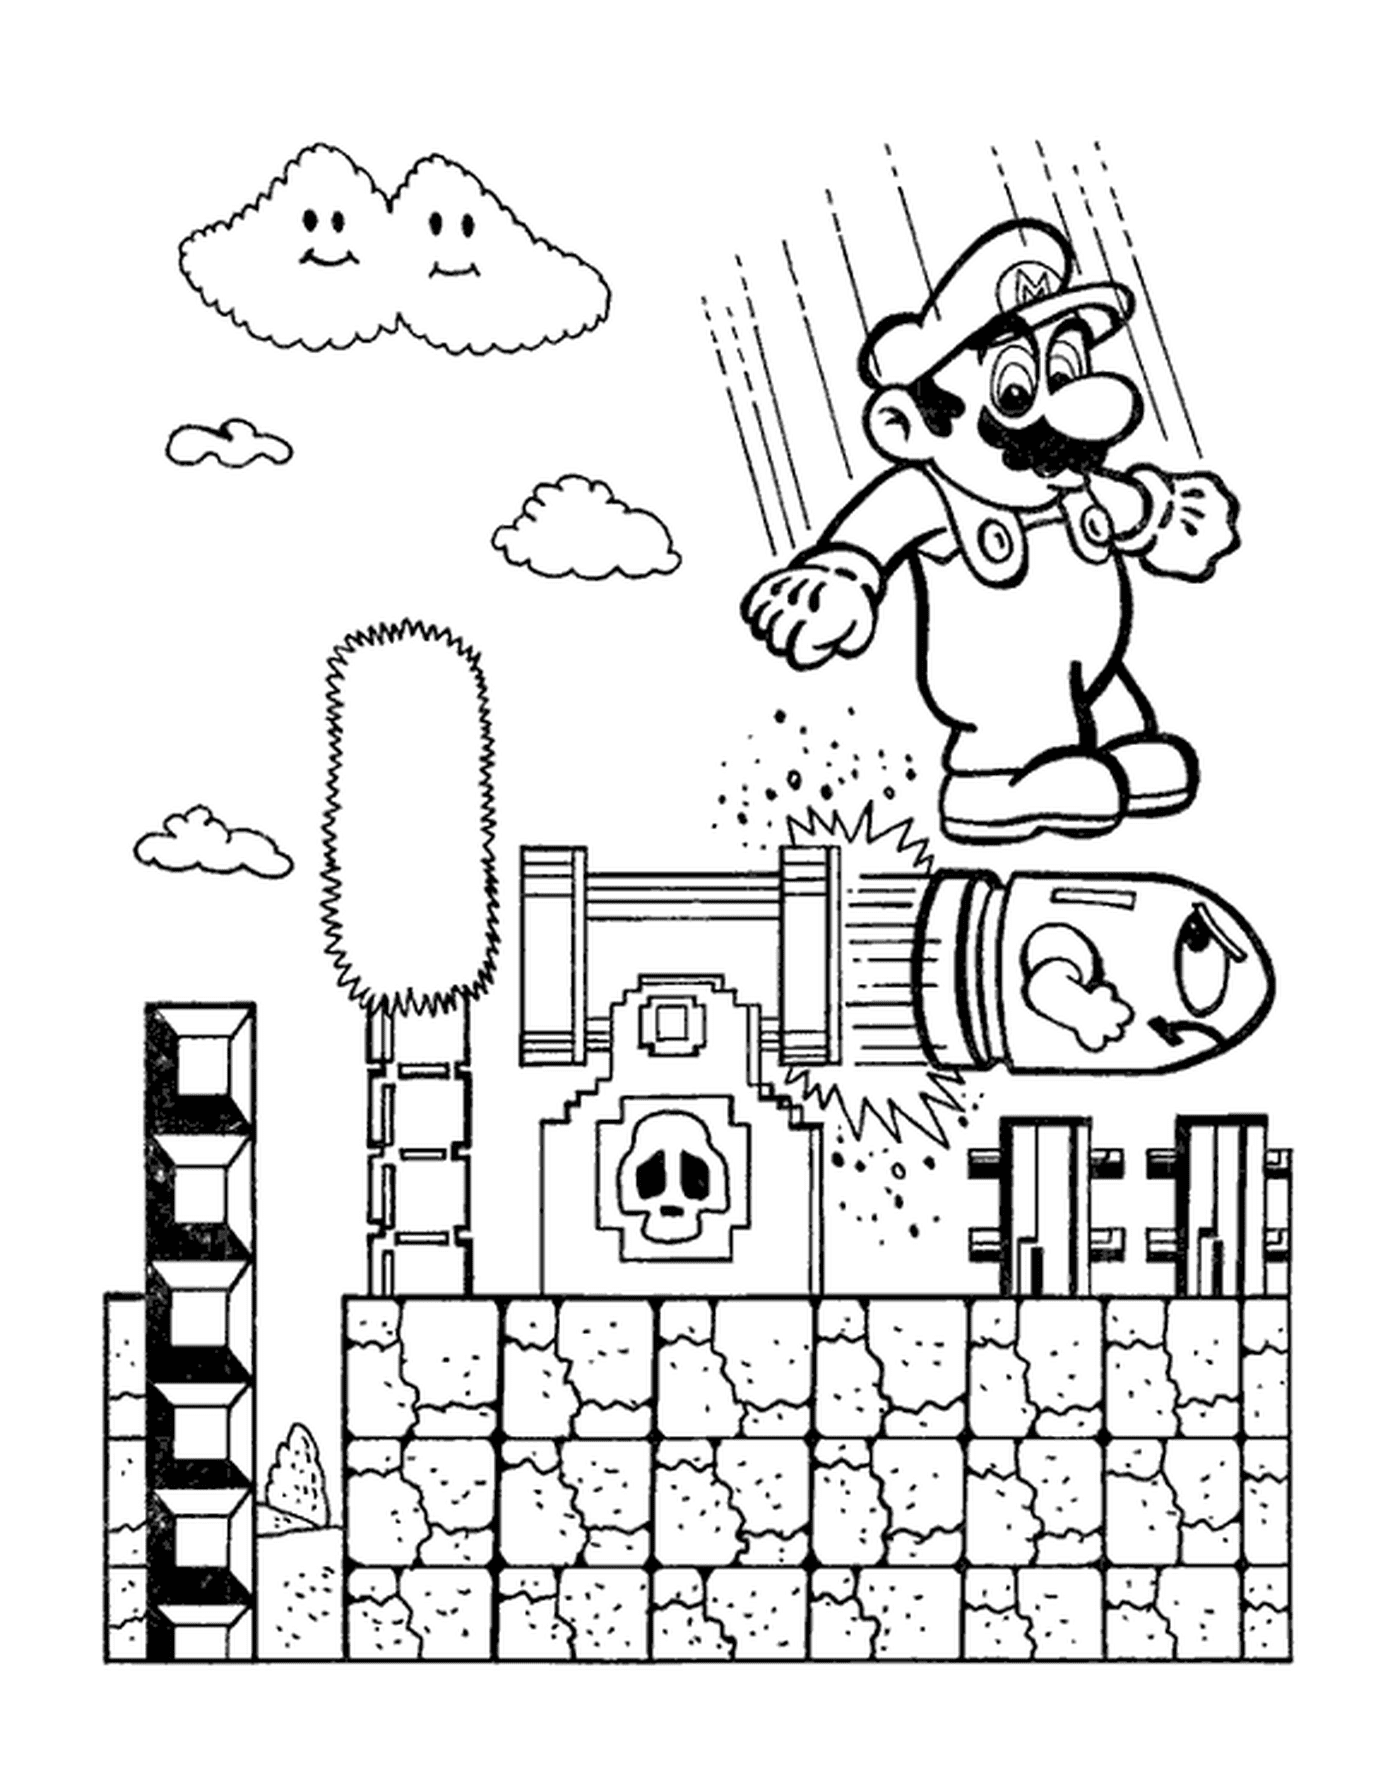  Mario springt auf eine gefährliche Bombe 